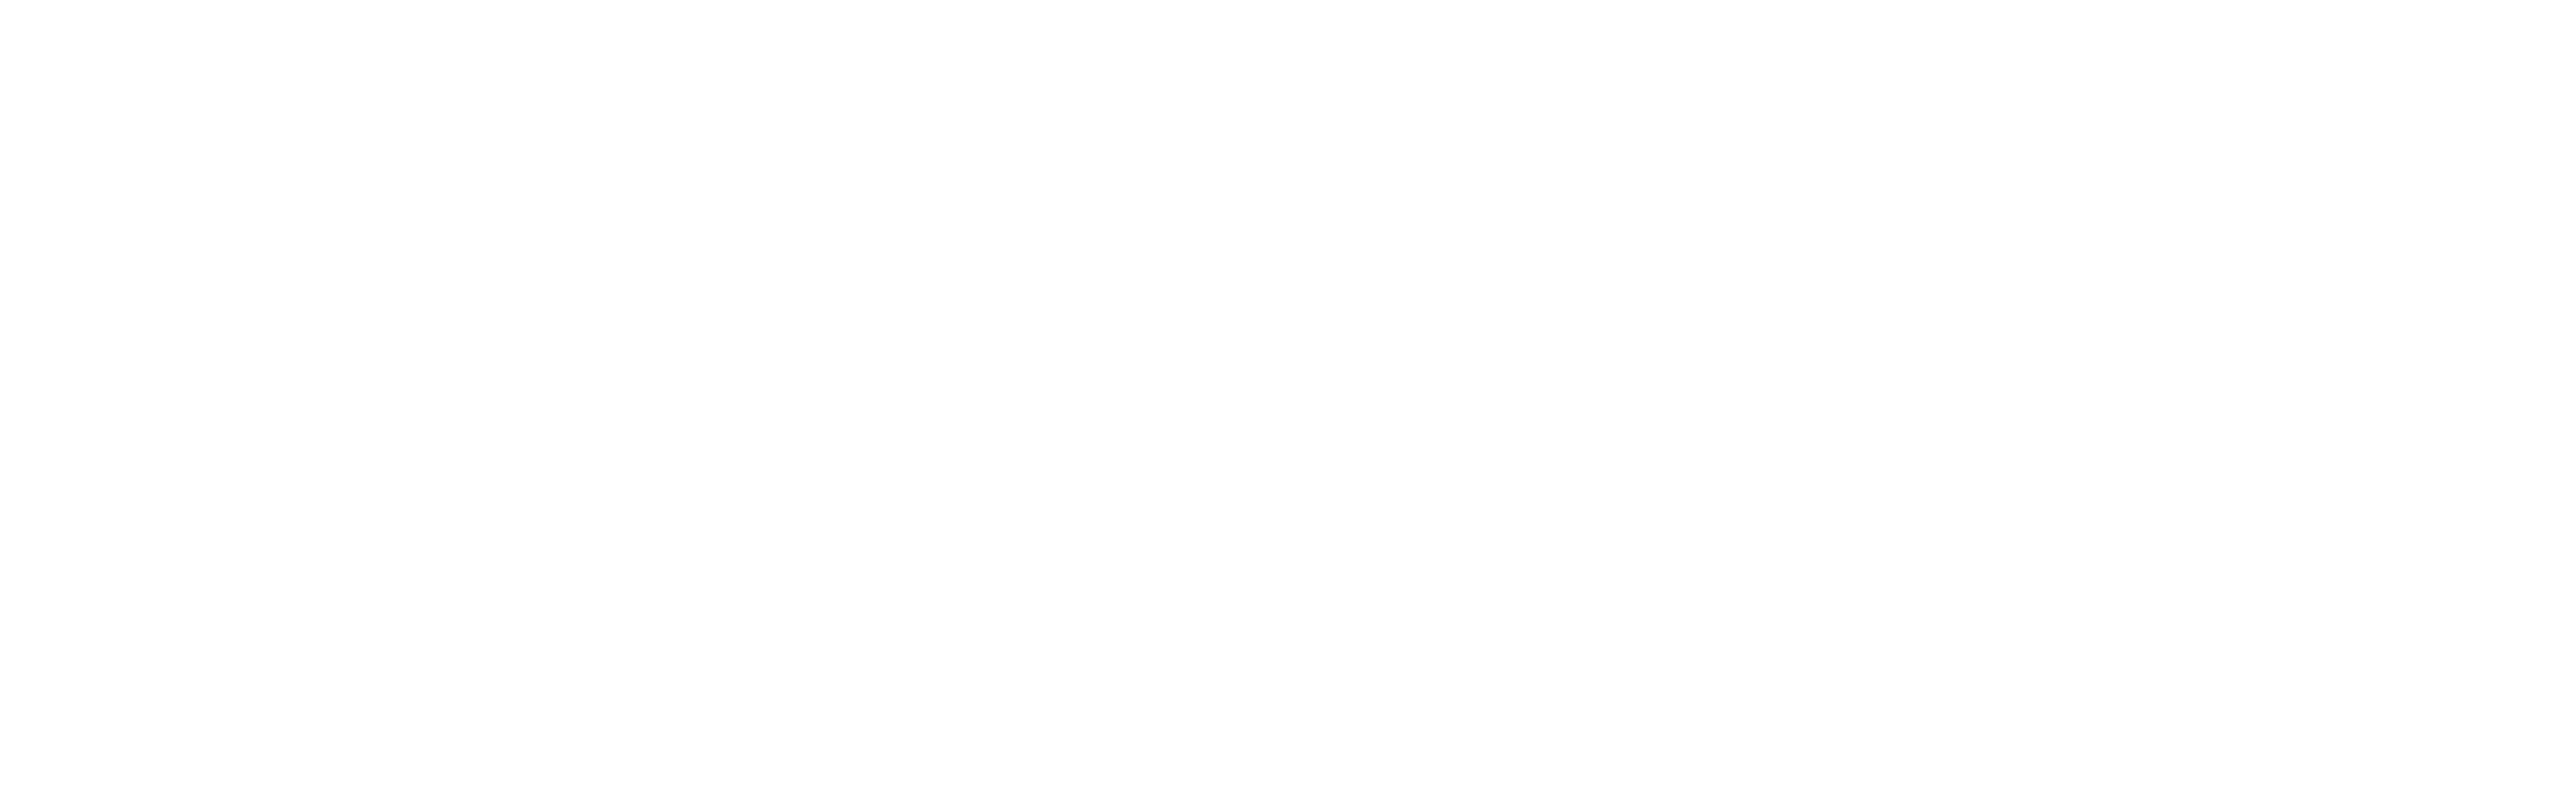 C3 + 3